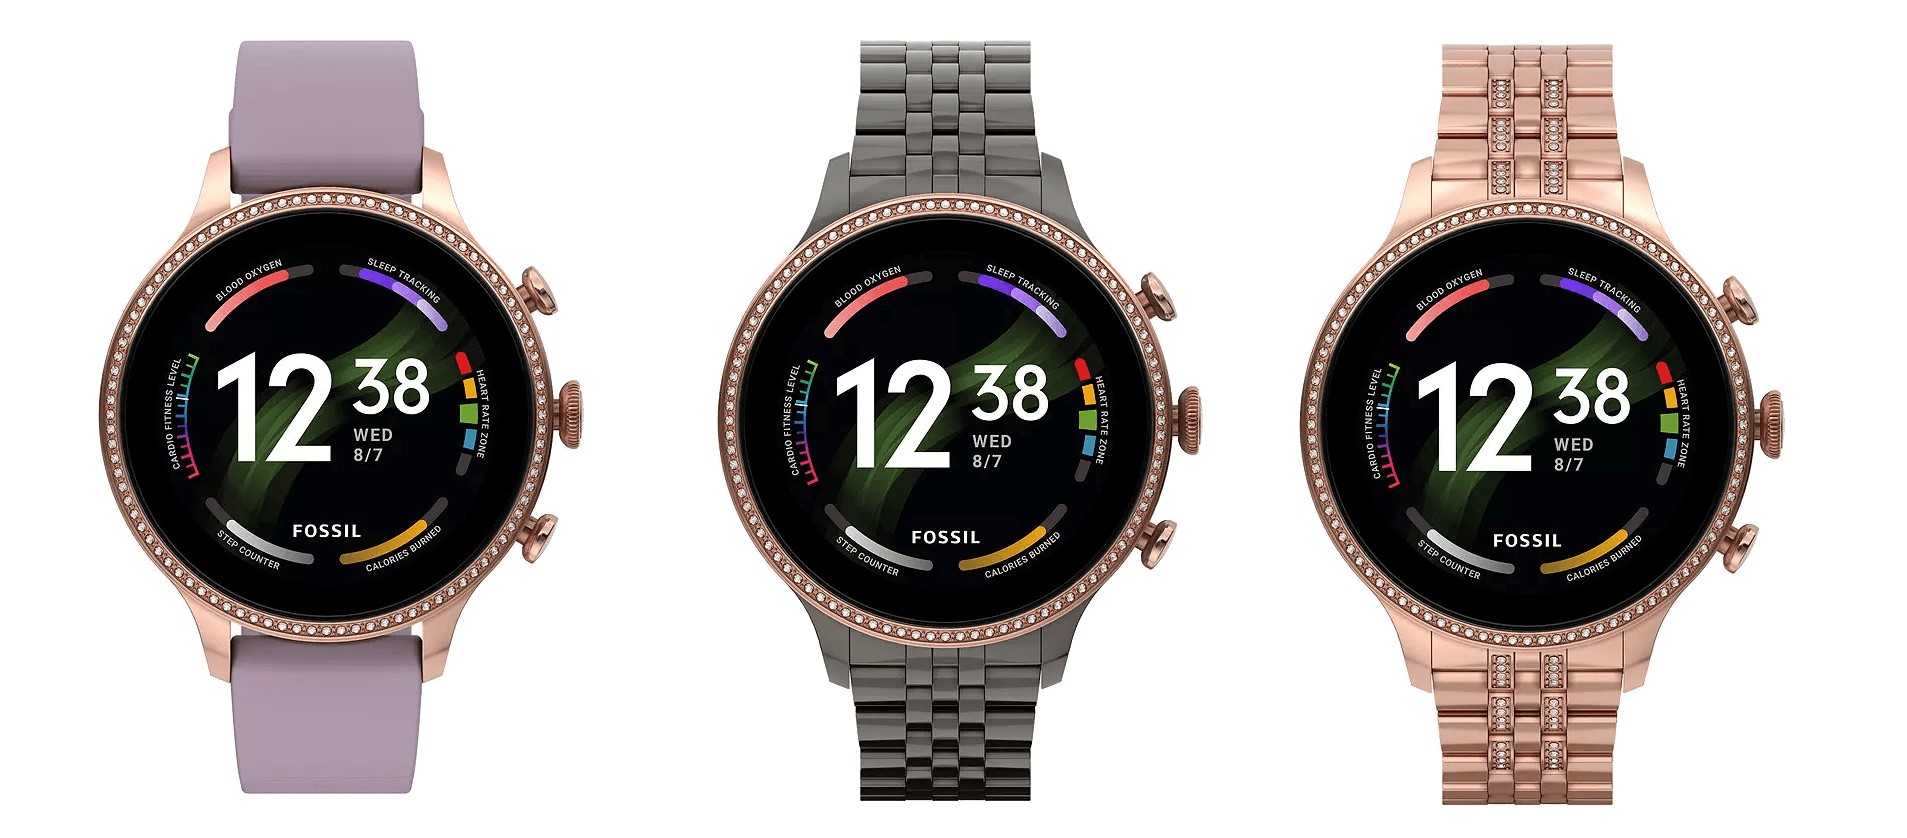 Fossil Gen 6: Erste Details, Bilder und Preise der Smartwatch geleakt